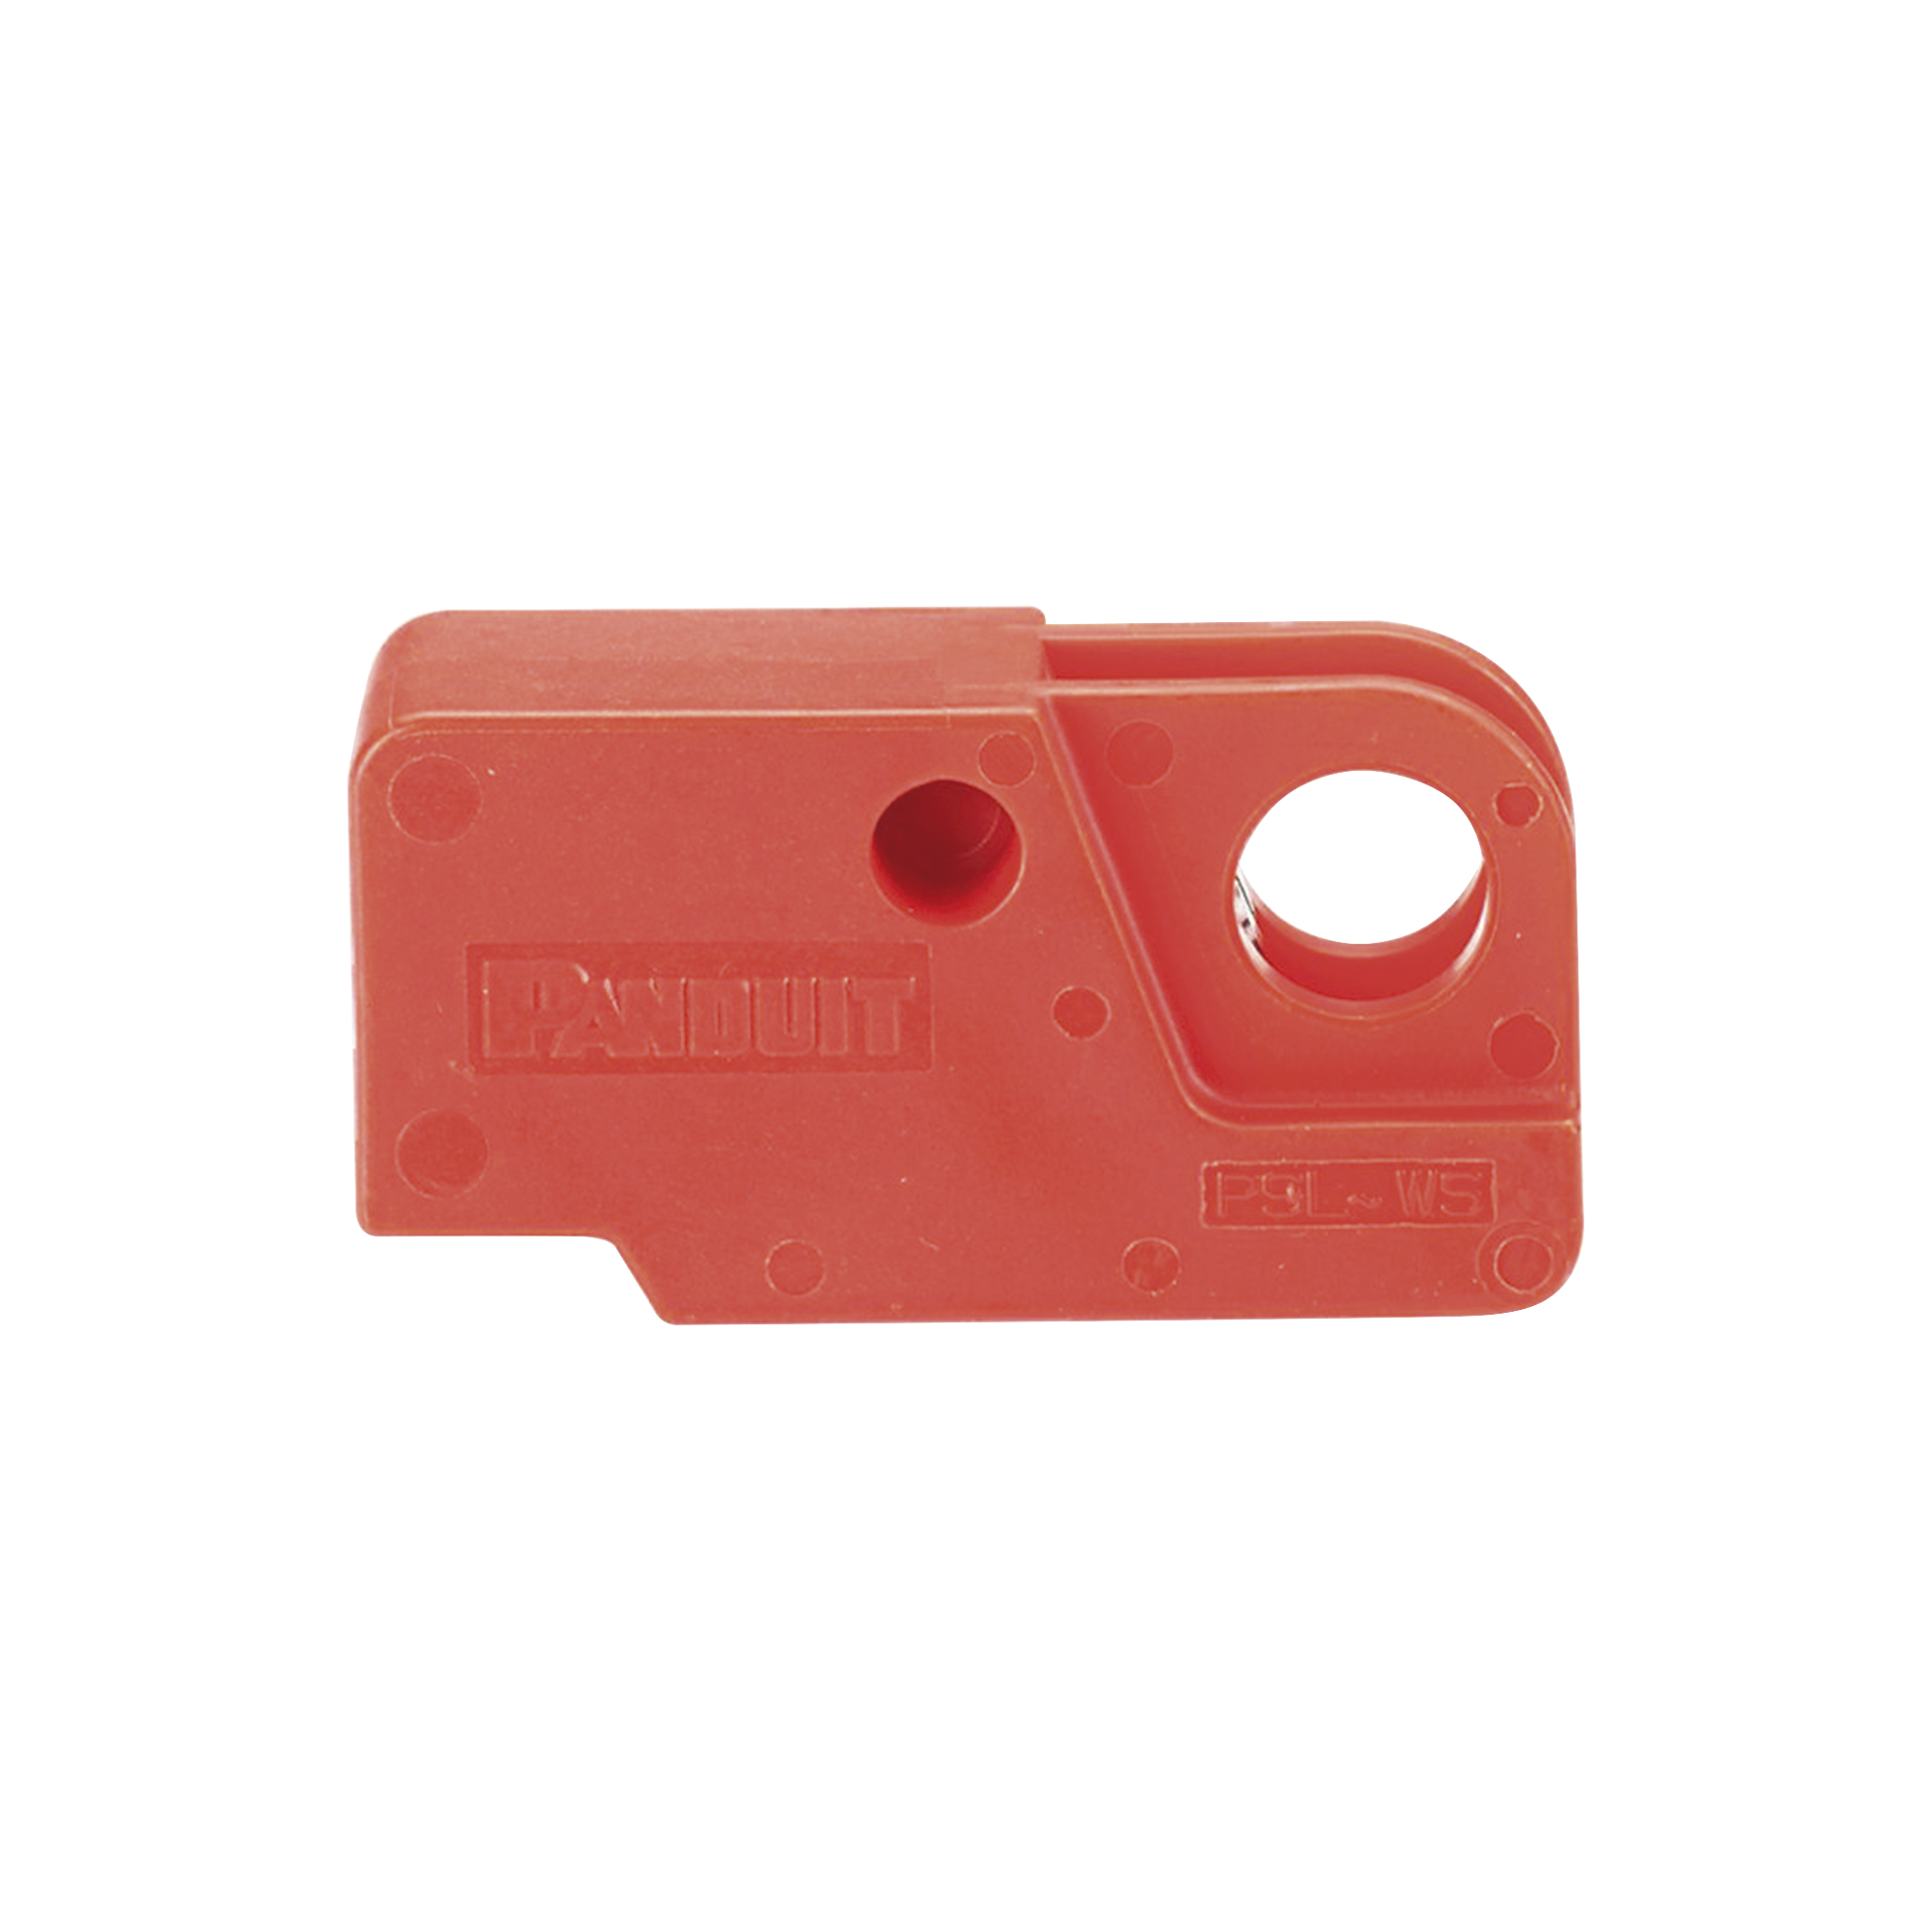 Dispositivo de Bloqueo Para Interruptores Eléctricos de Palanca, de 15.2 x 22.3 mm, Color Rojo